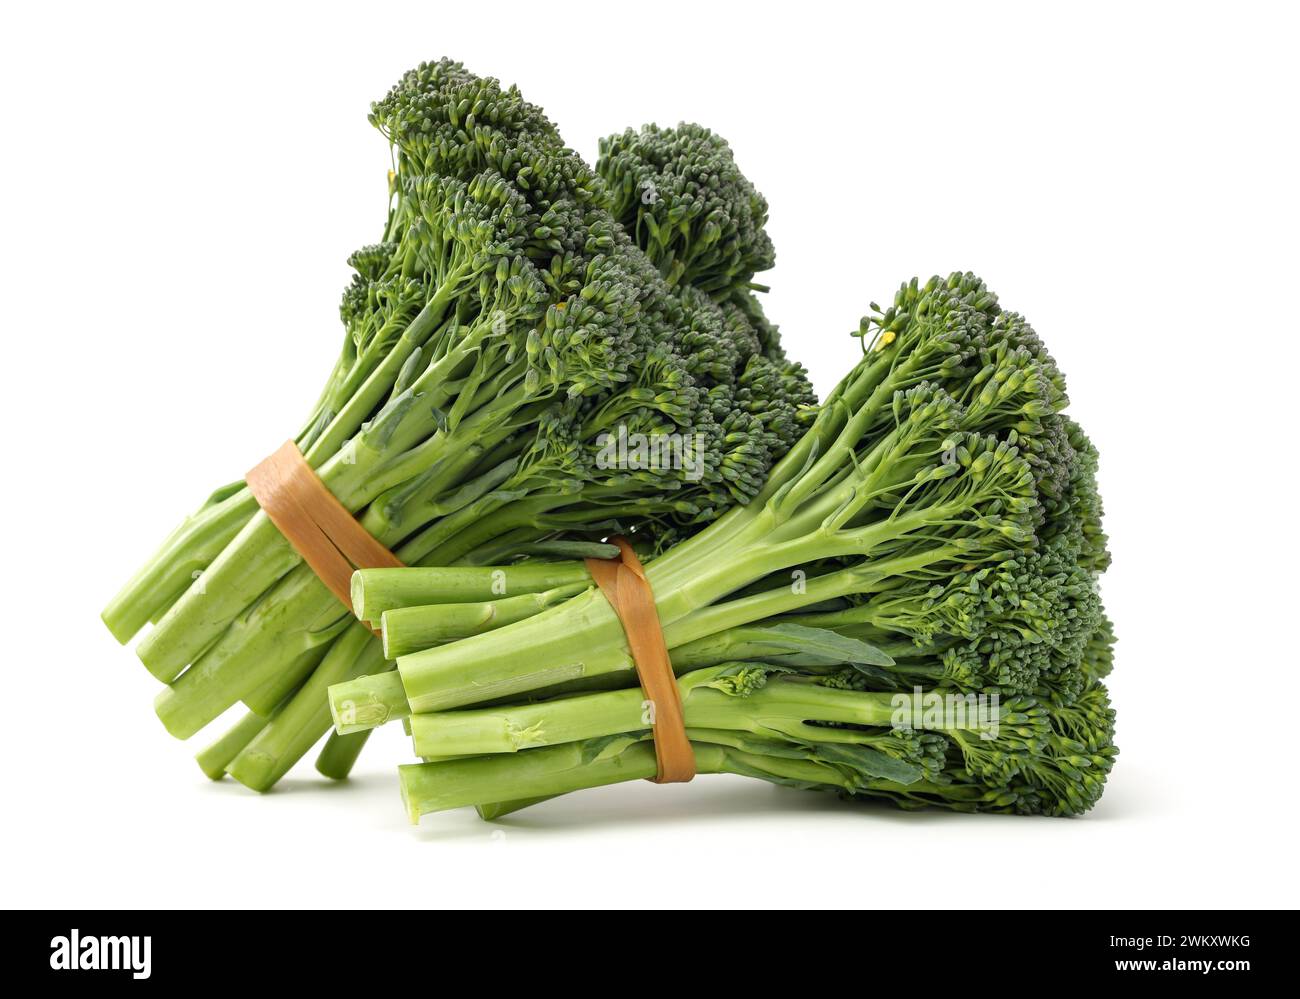 Broccolini baby broccoli su sfondo bianco Foto Stock